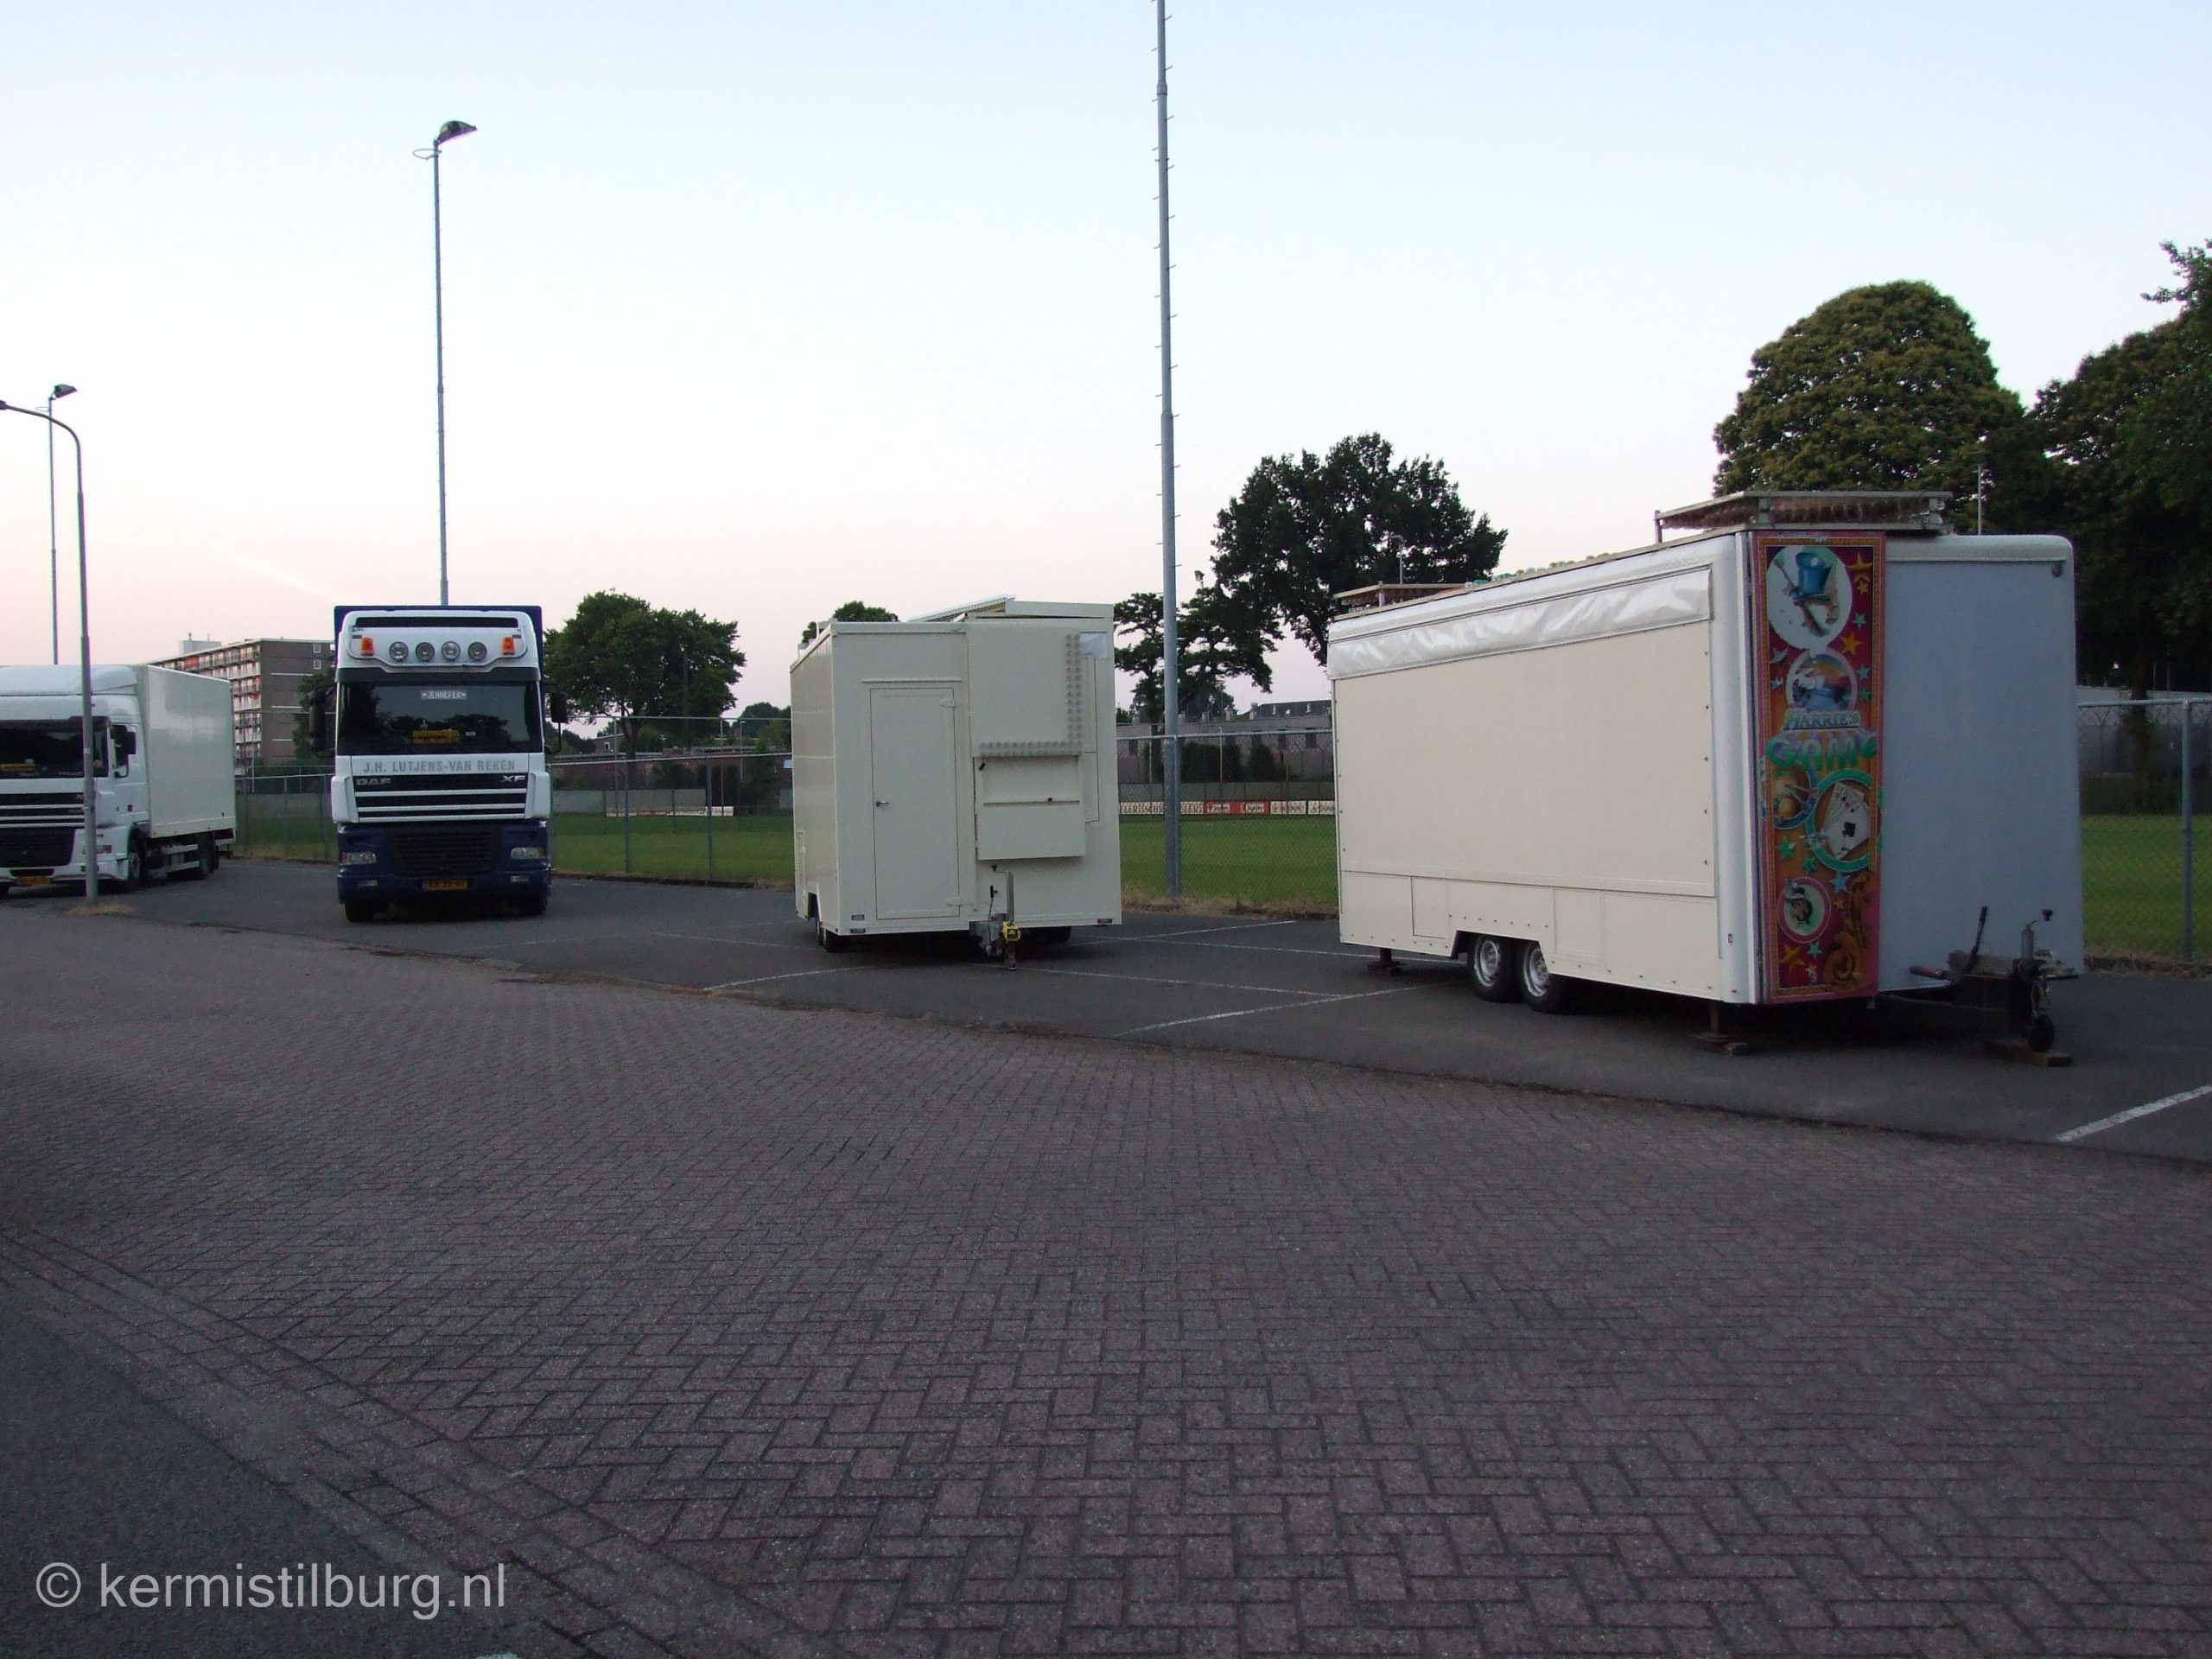 2013, Kermis, Tilburg, Tilburgse kermis, transport